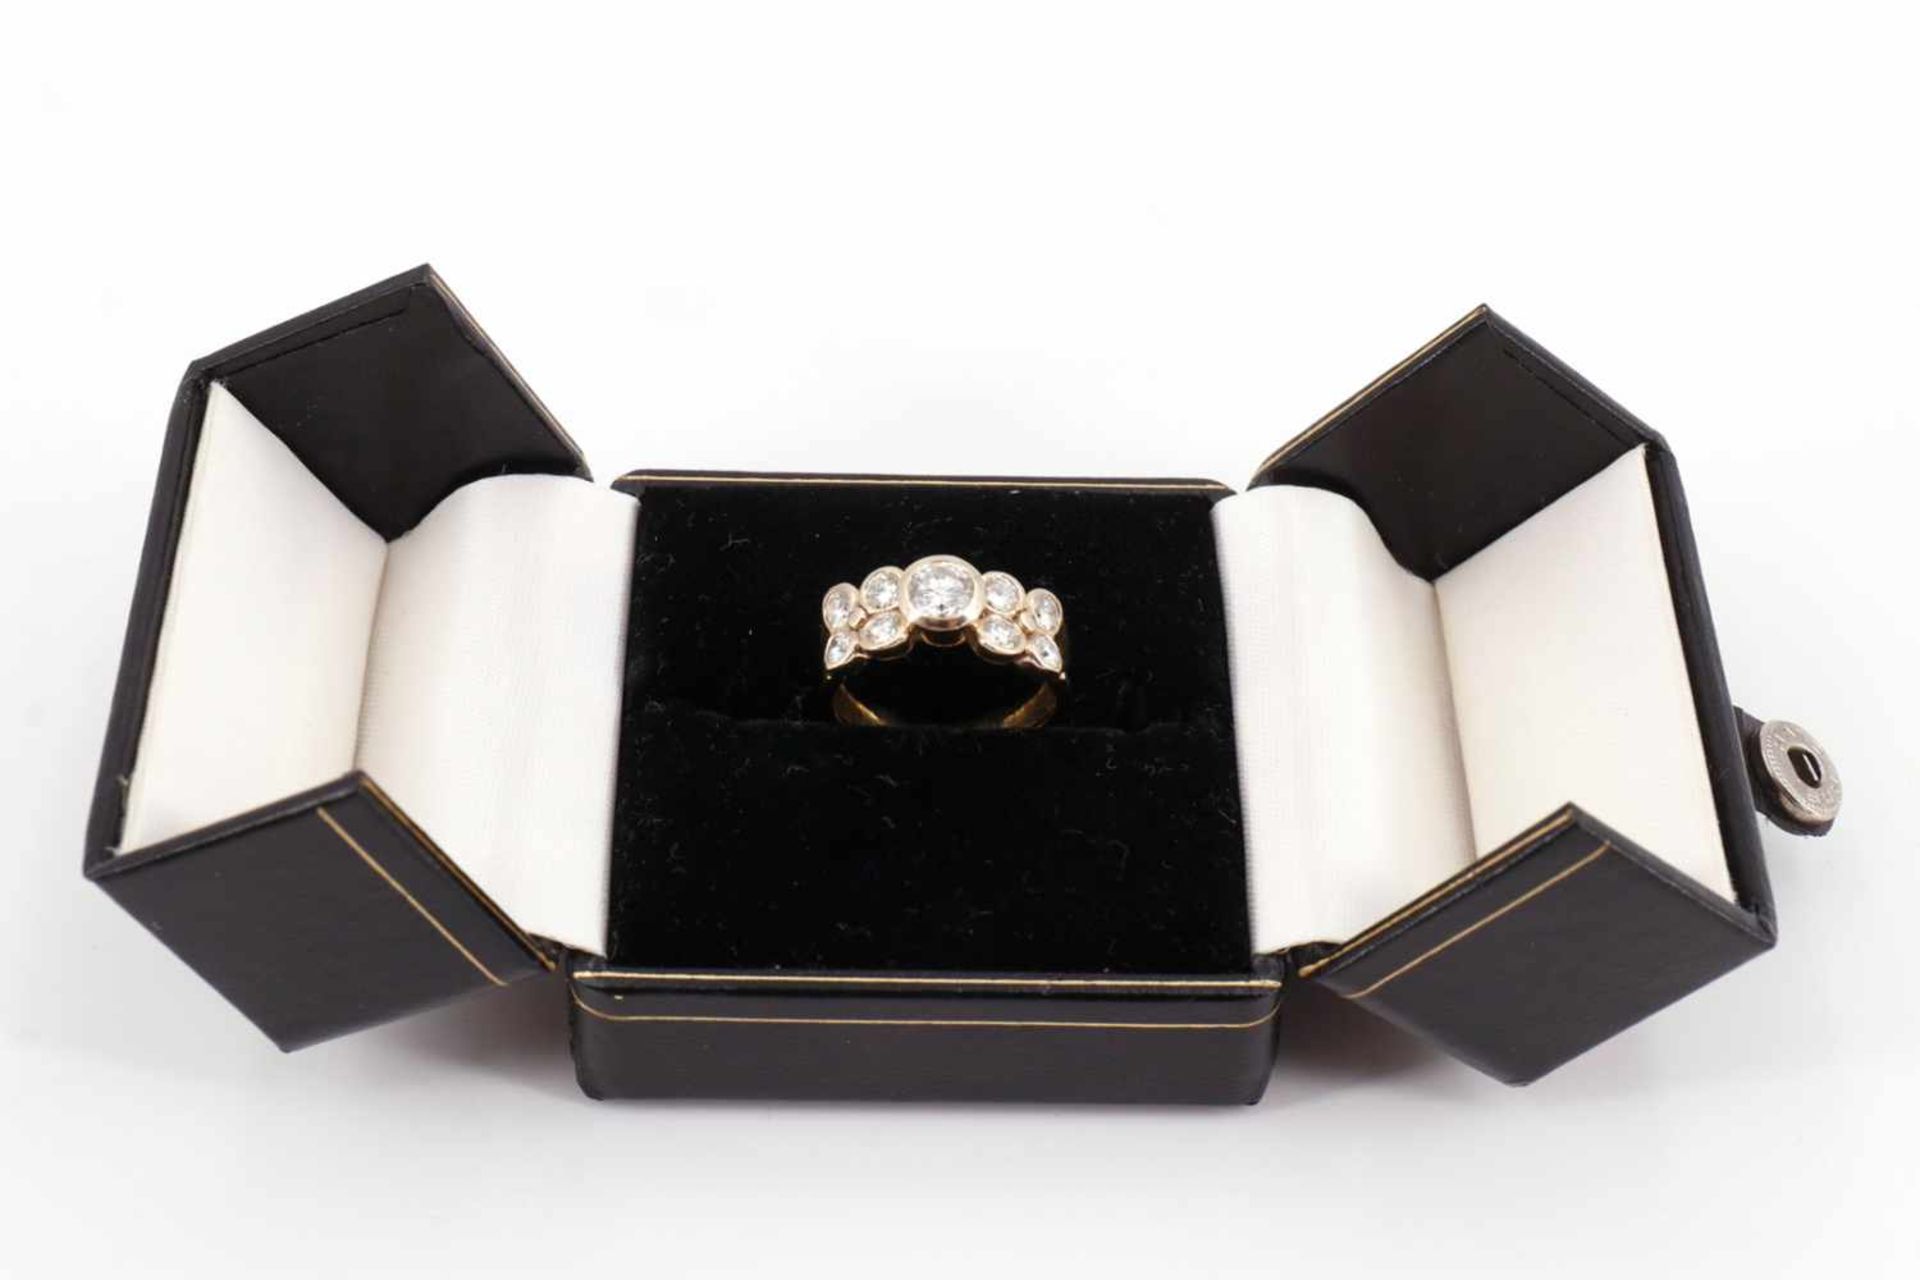 Brillant-Ring, mit einem großen und 8 kleinen Steinen, 750 GG, 6,3 Gramm, Innendurchmesser 17 mm